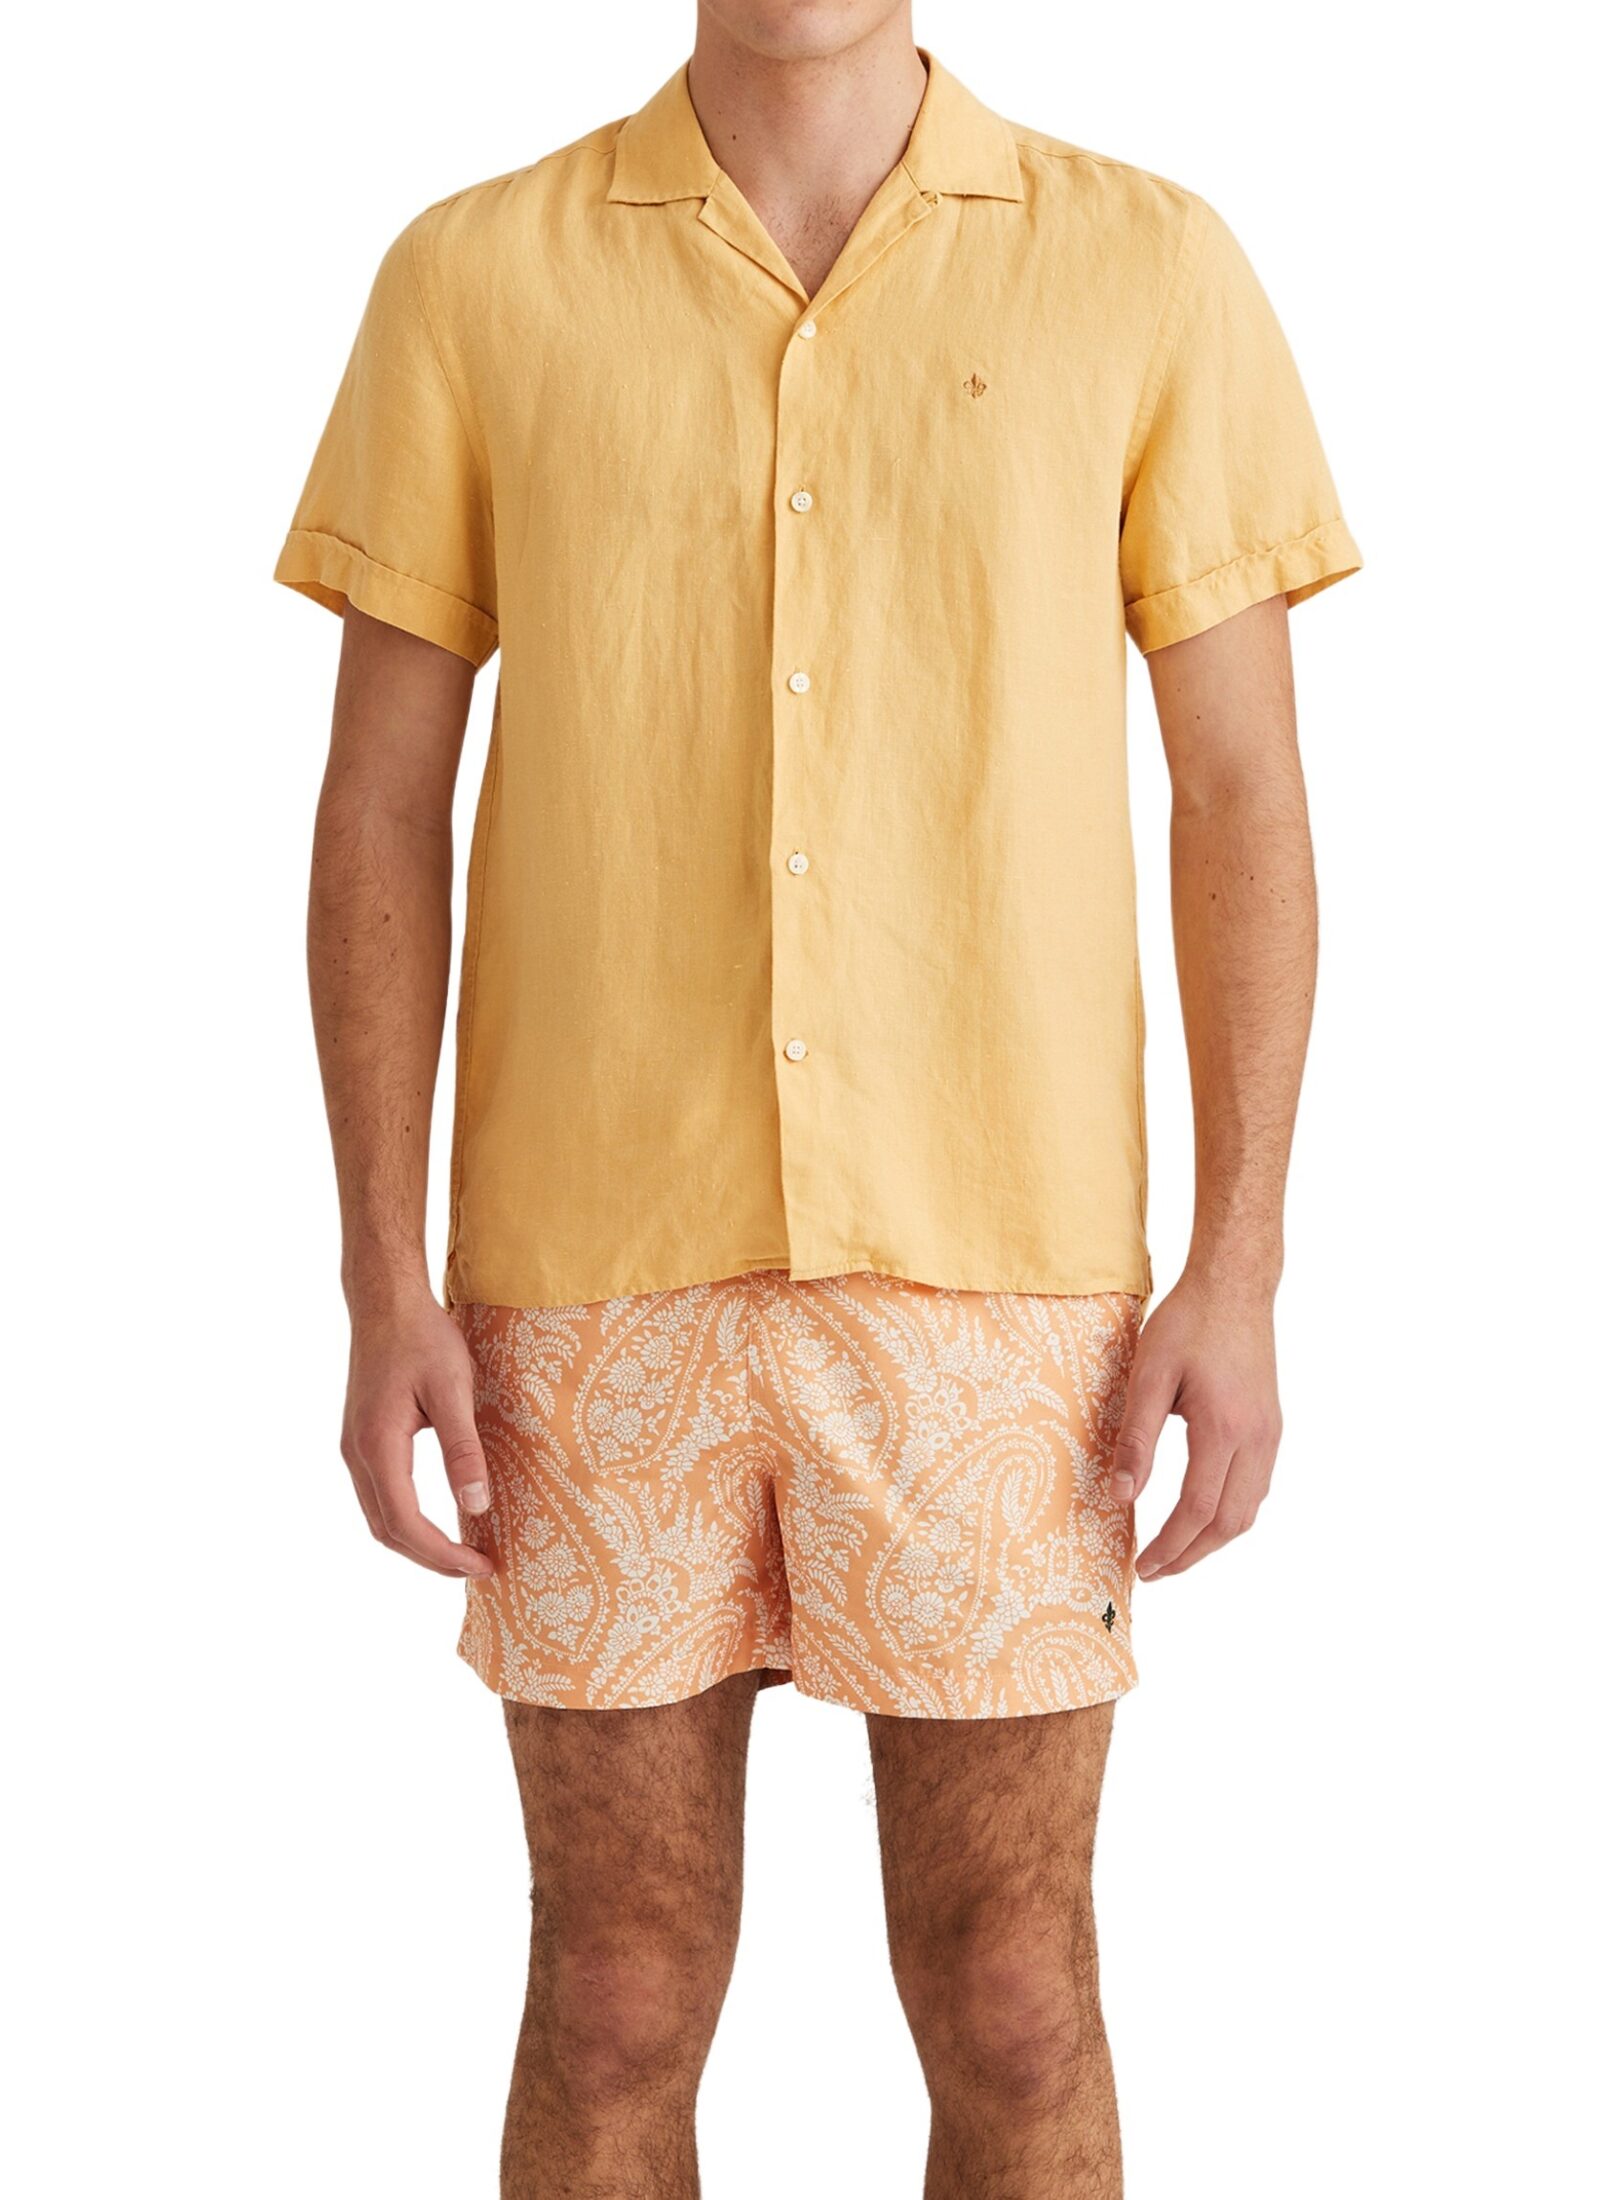 801604-short-sleeve-linen-shirt-16-yellow-1